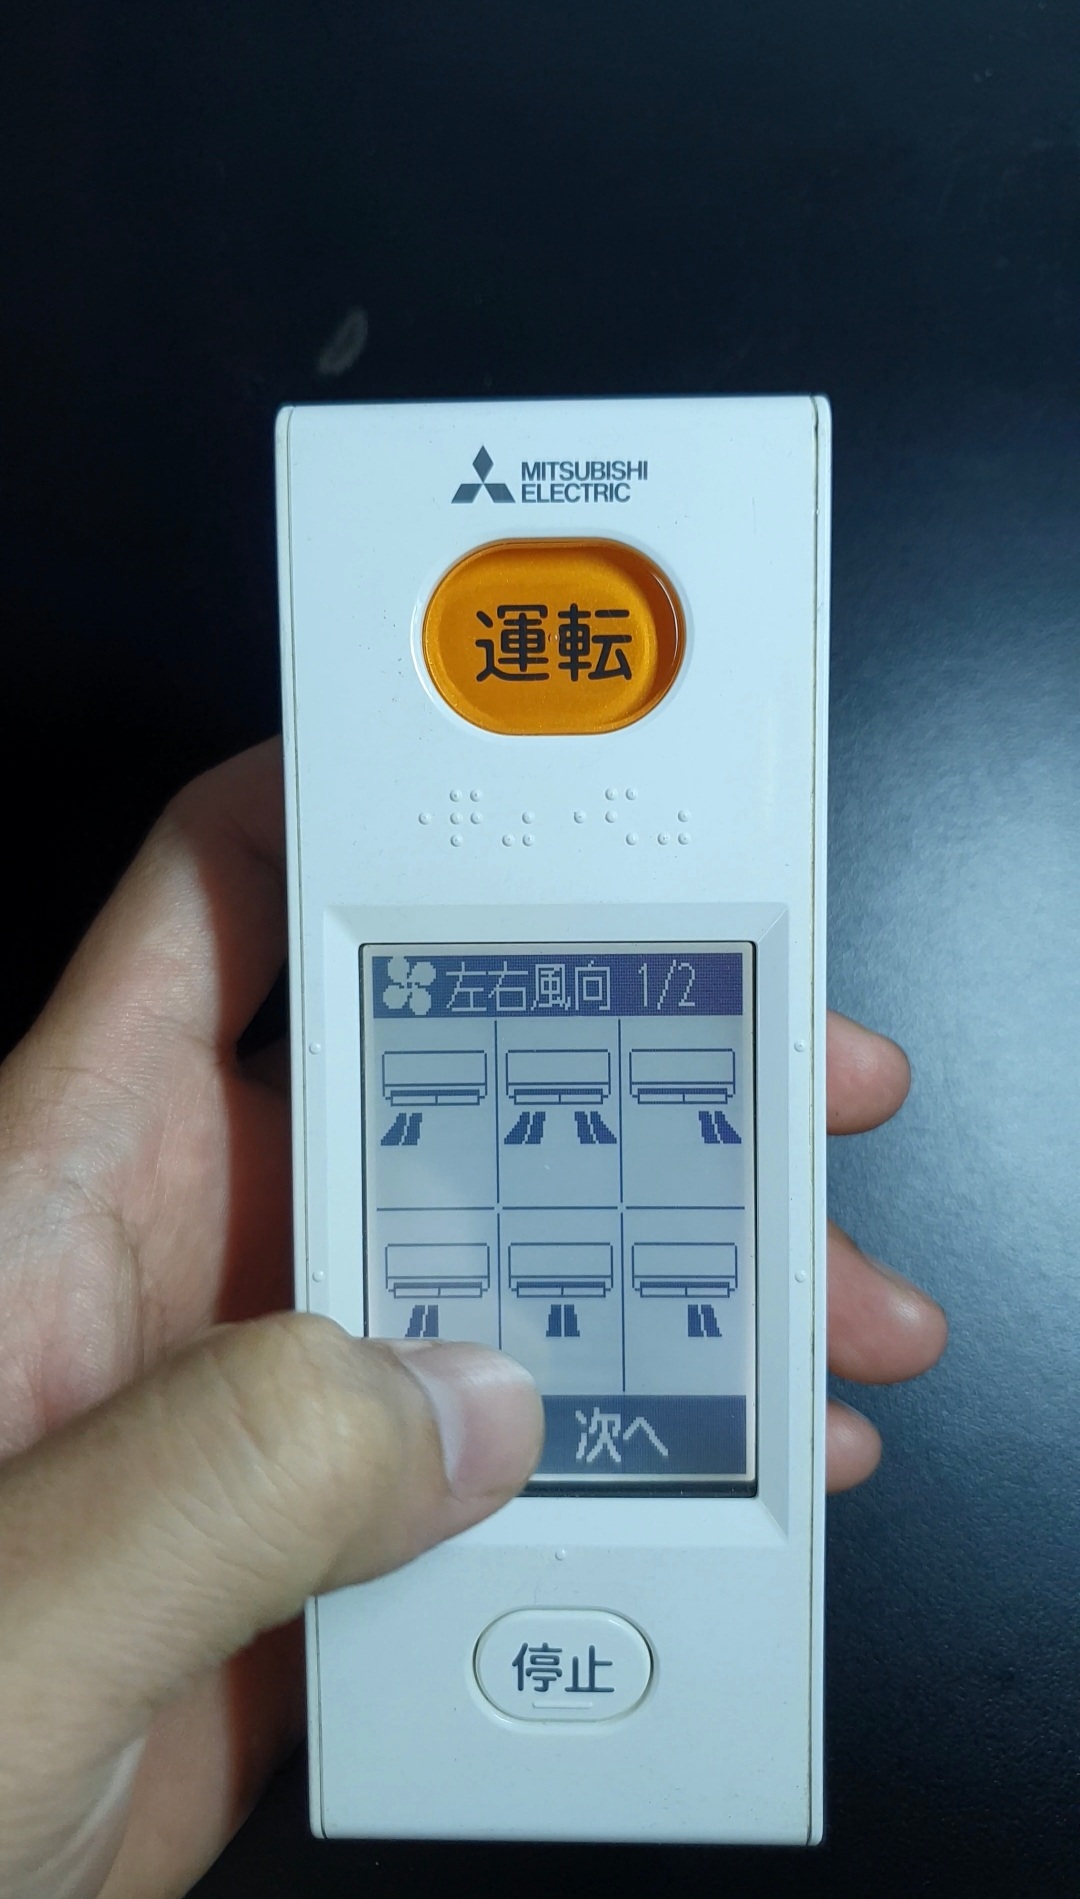 Remote máy lạnh nội địa Nhật Mitsubishi màn hình cảm ứng